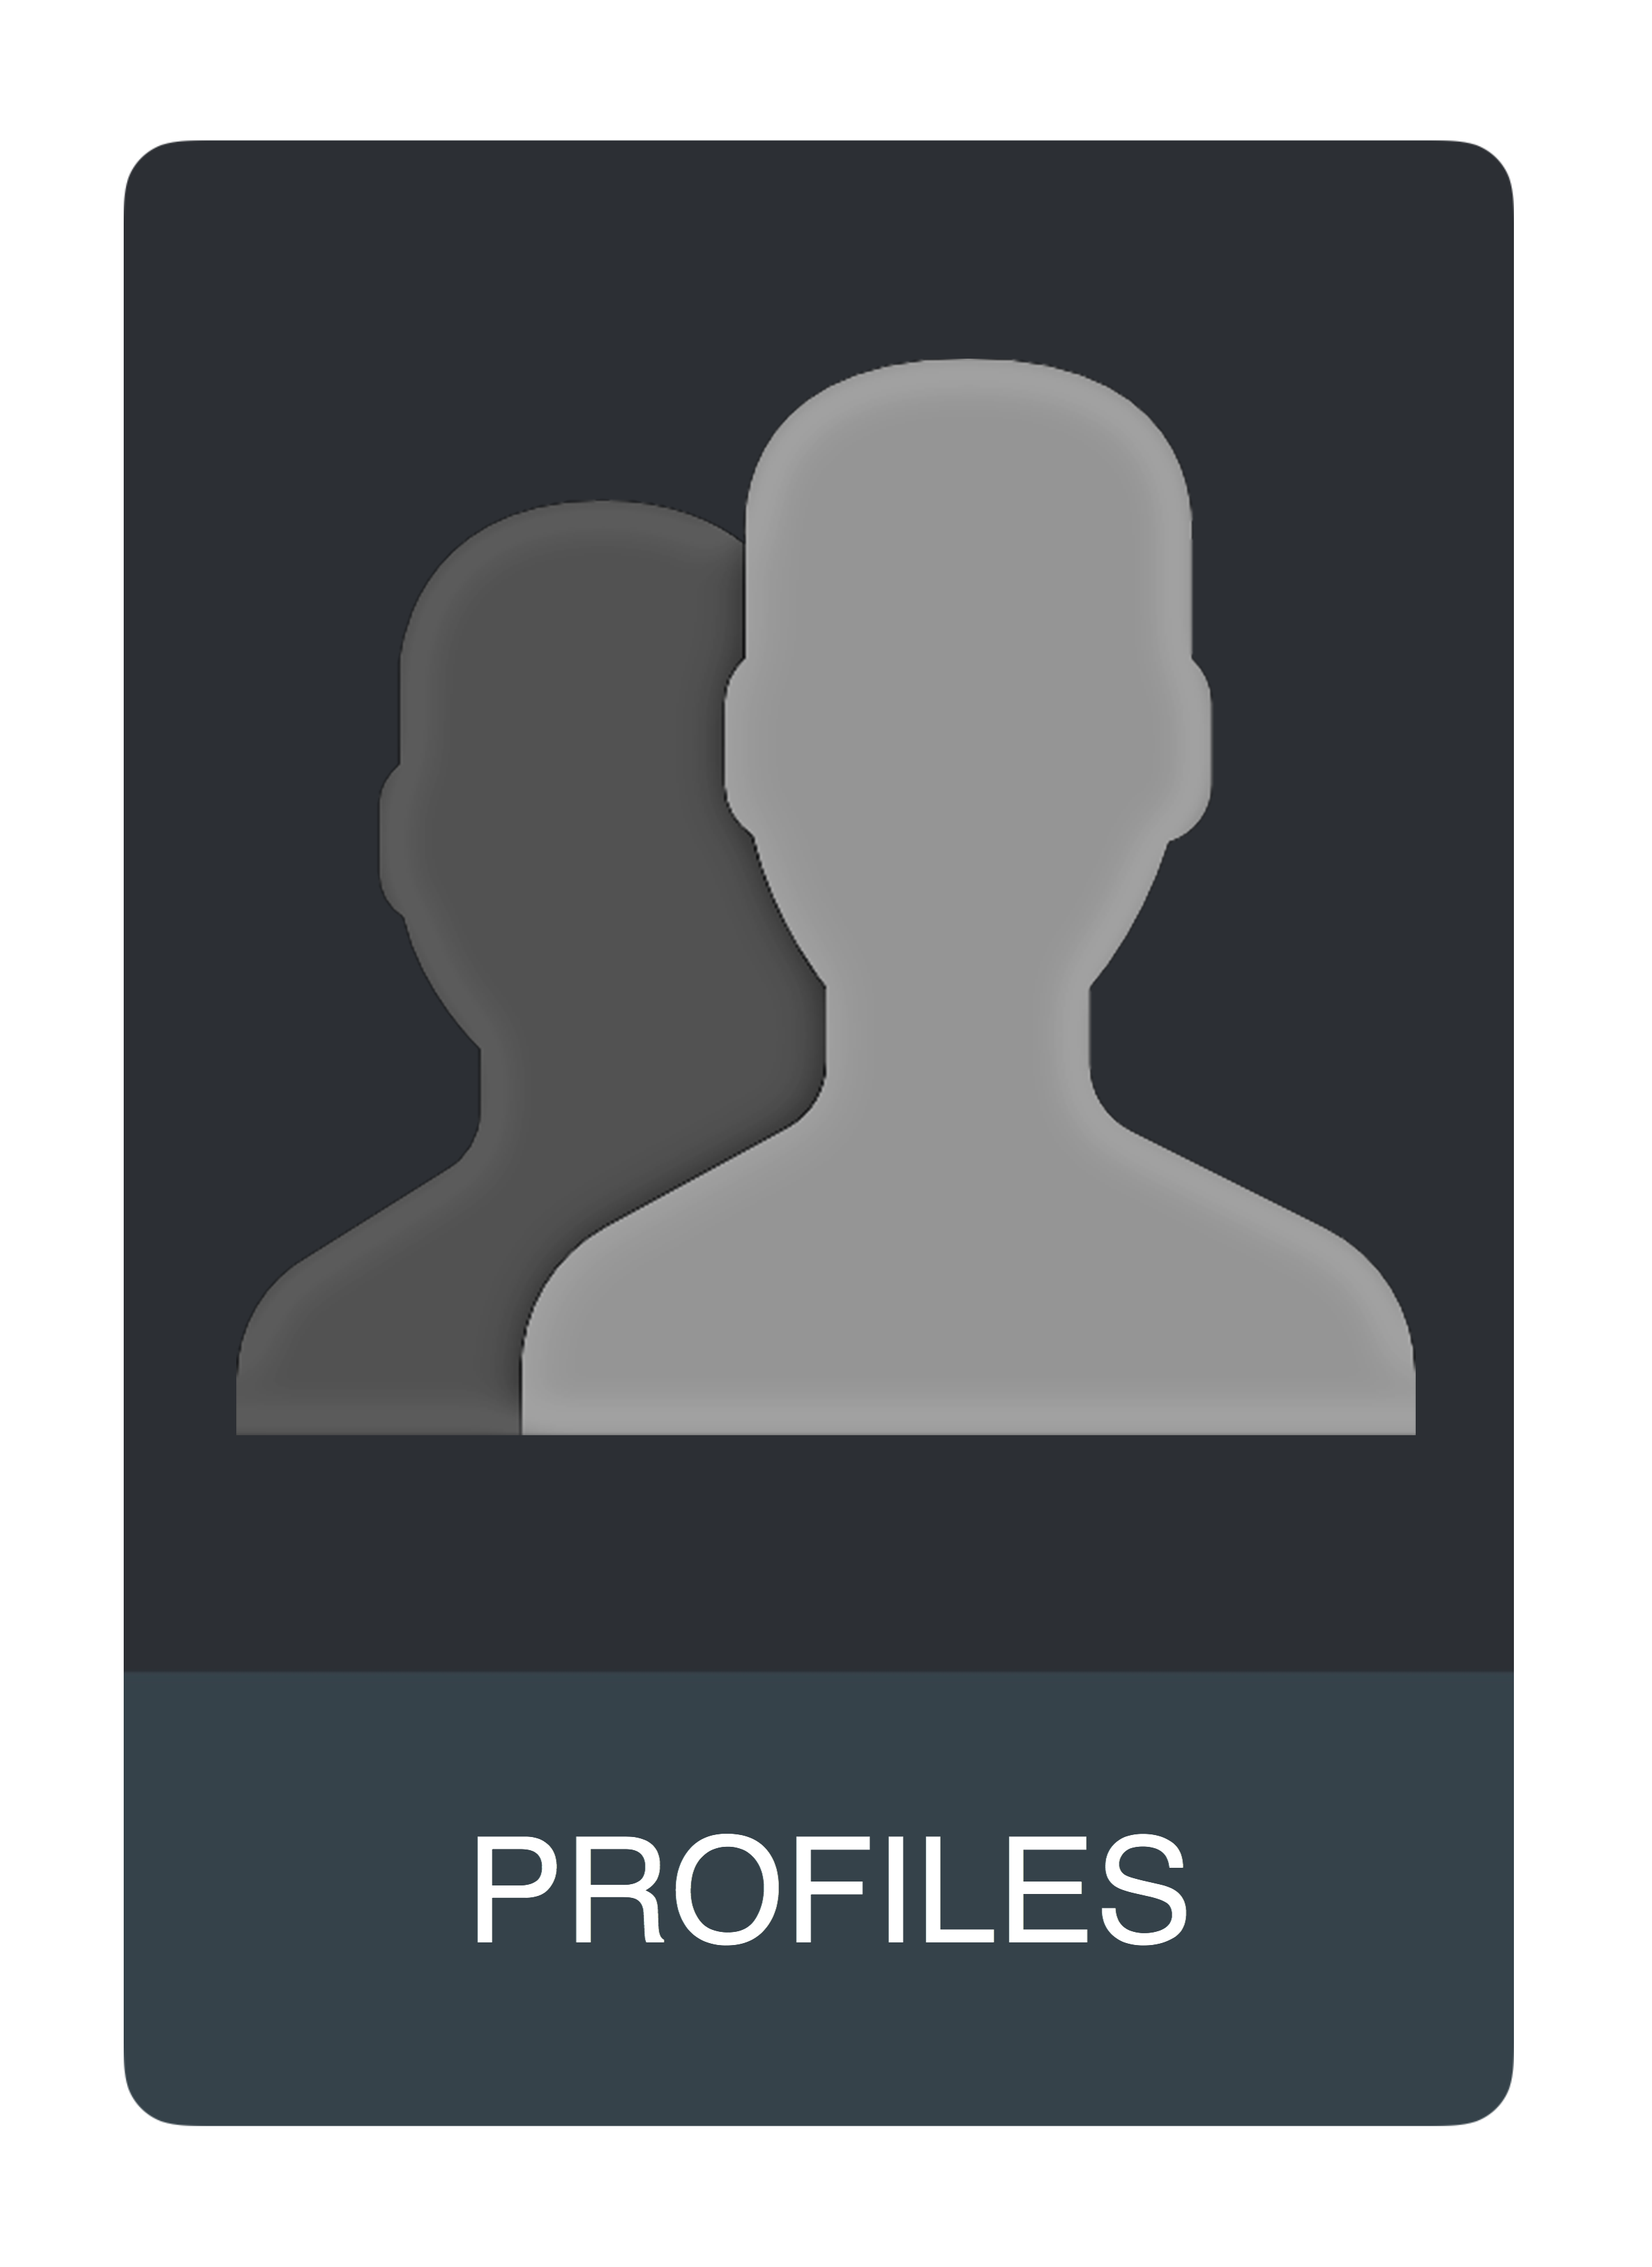 Profiles